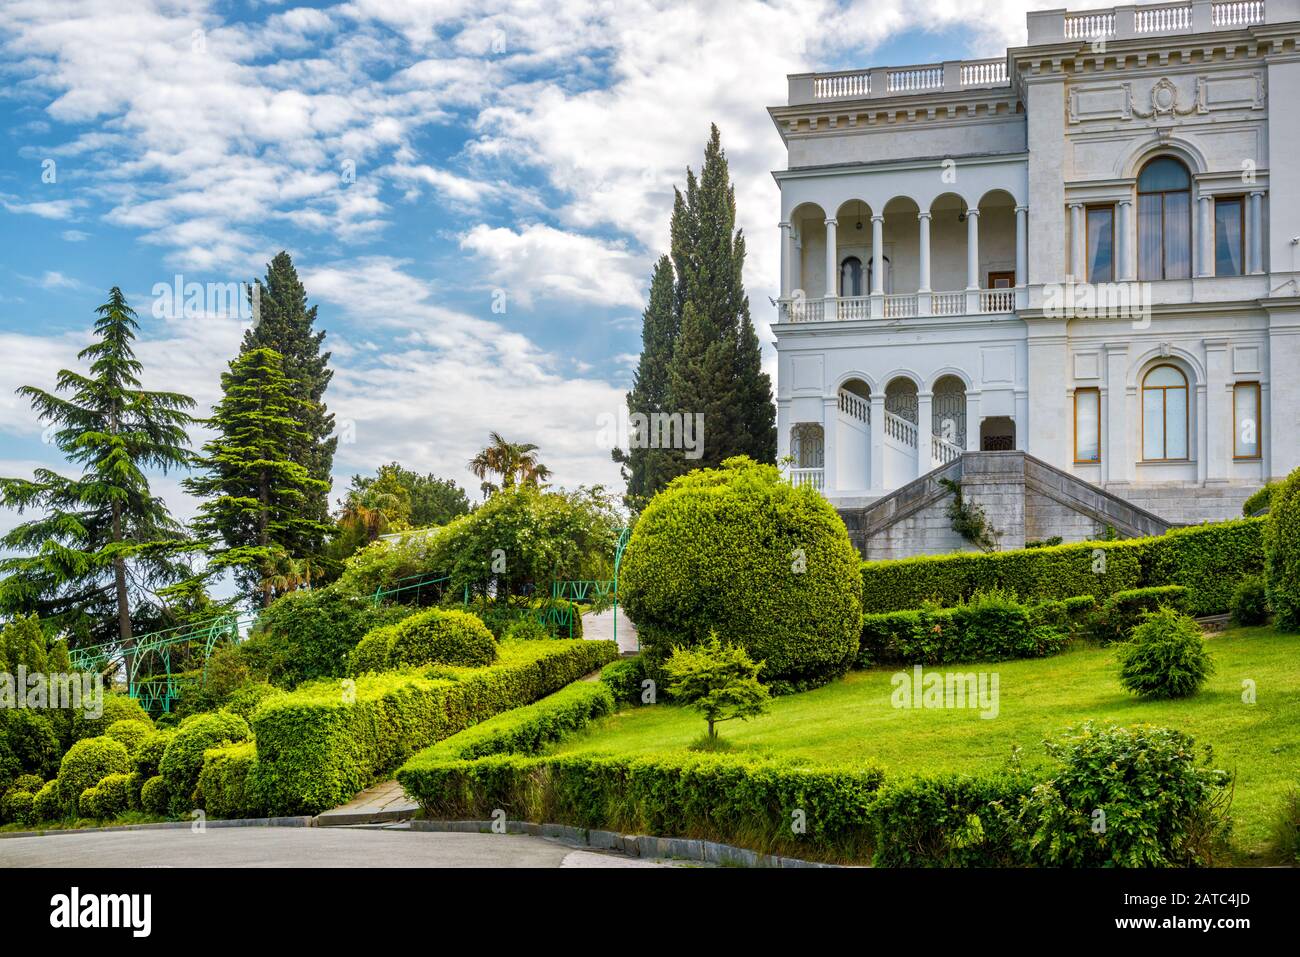 Yalta, Russia - 17 Maggio 2016: Palazzo Livadia In Crimea. Livadia Palace è stato un rifugio estivo dell'ultimo zar russo, Nicholas II La Conferenc Di Yalta Foto Stock